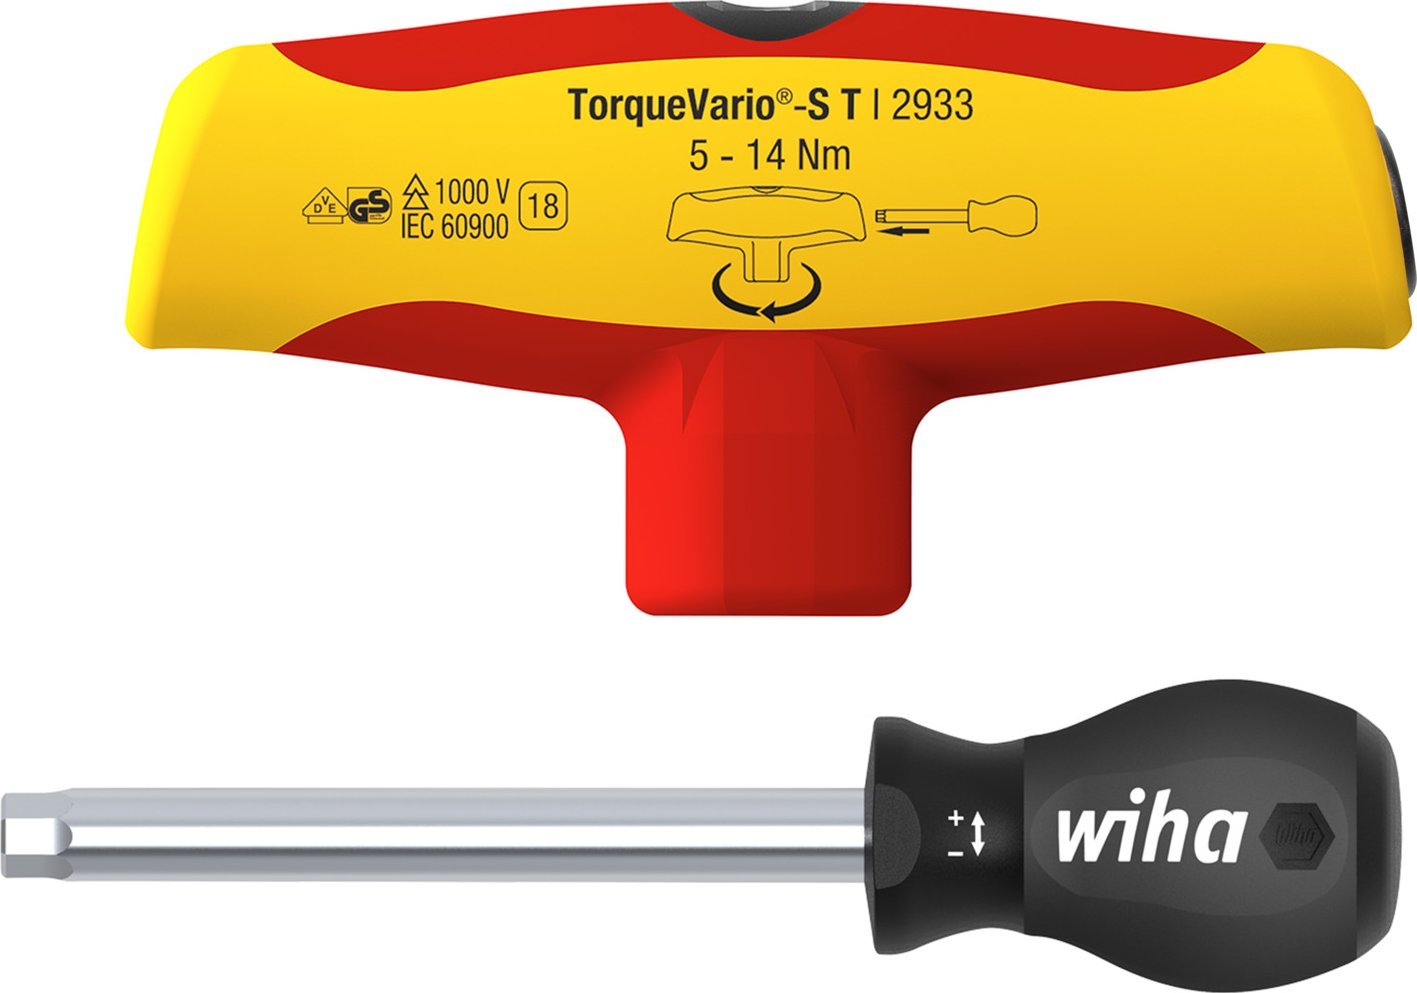 Zdjęcia - Wkrętak Wiha torque screwdriver with T-handle - 43177 